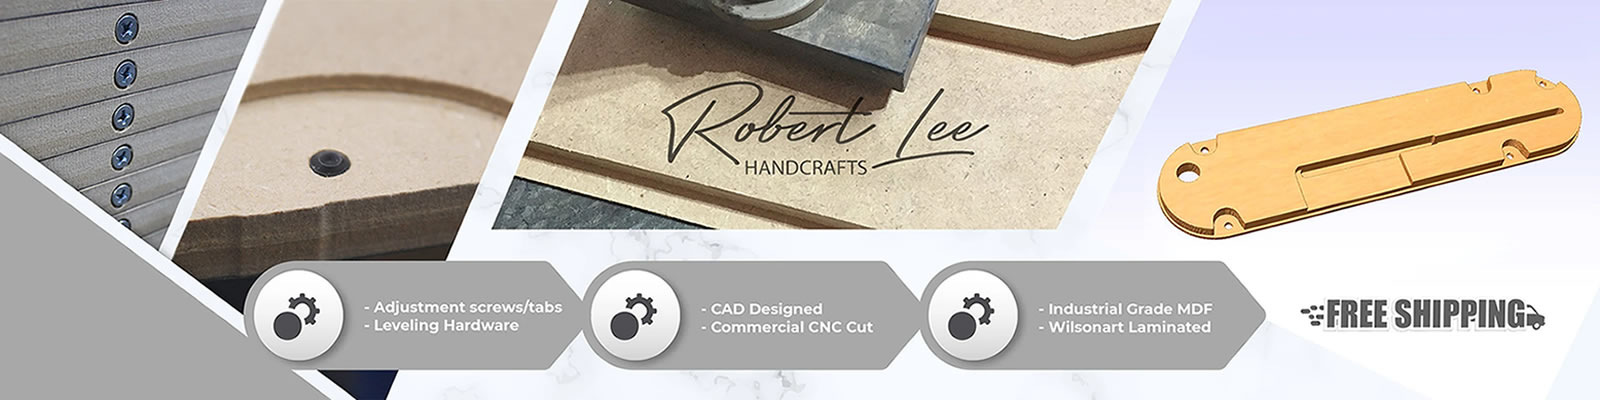 Robert Lee Handcrafts head